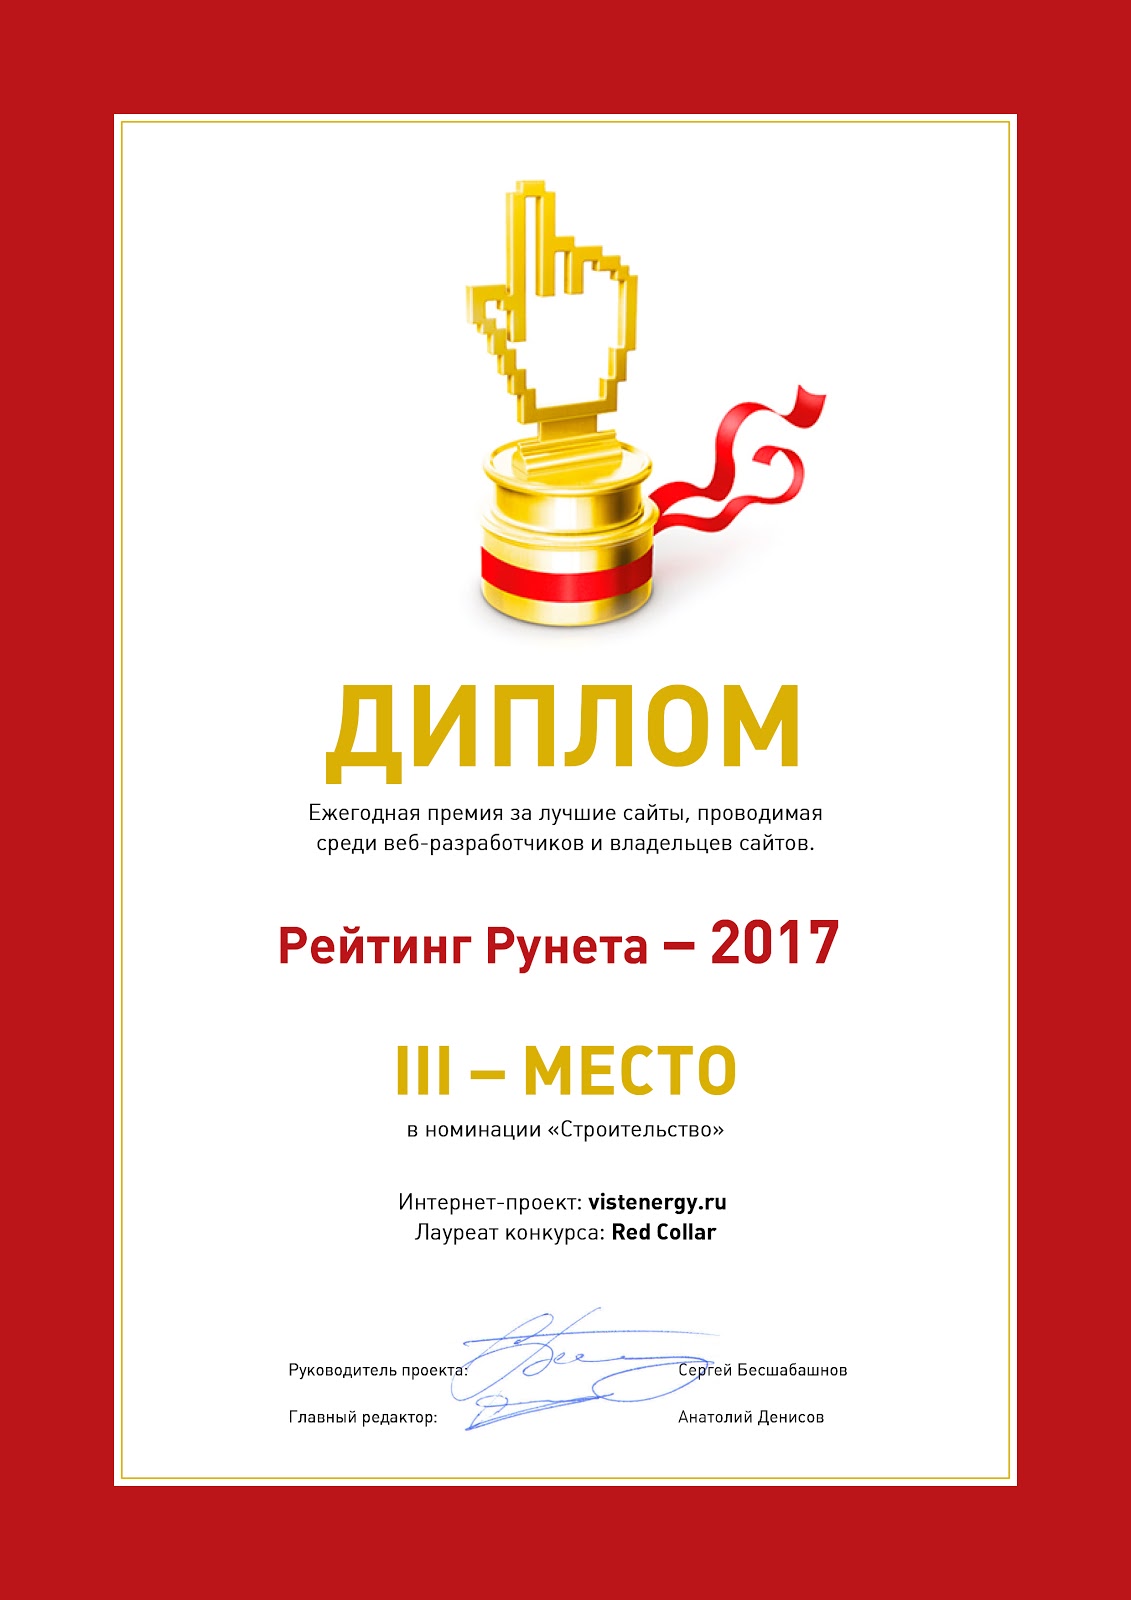 Разработанный сайт получил 3 место в конкурсе "Рейтинг Рунета"